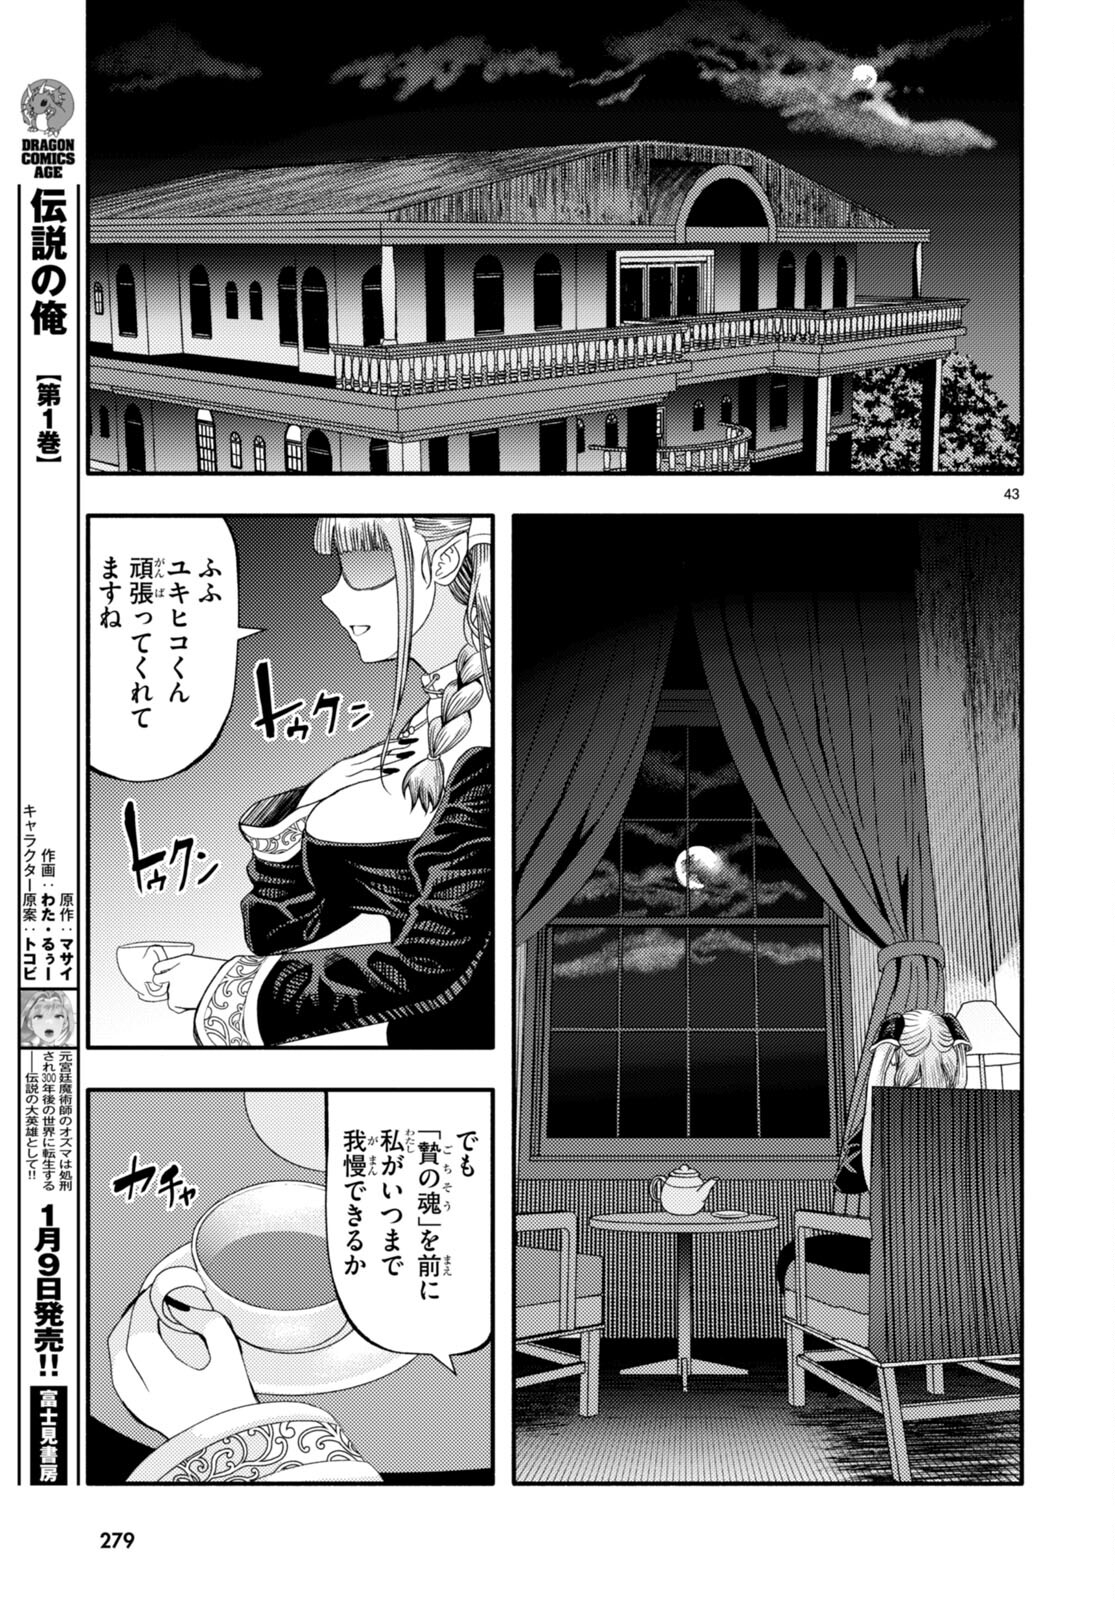 Akuma wa Rozario ni Kiss wo suru - Chapter 3 - Page 45